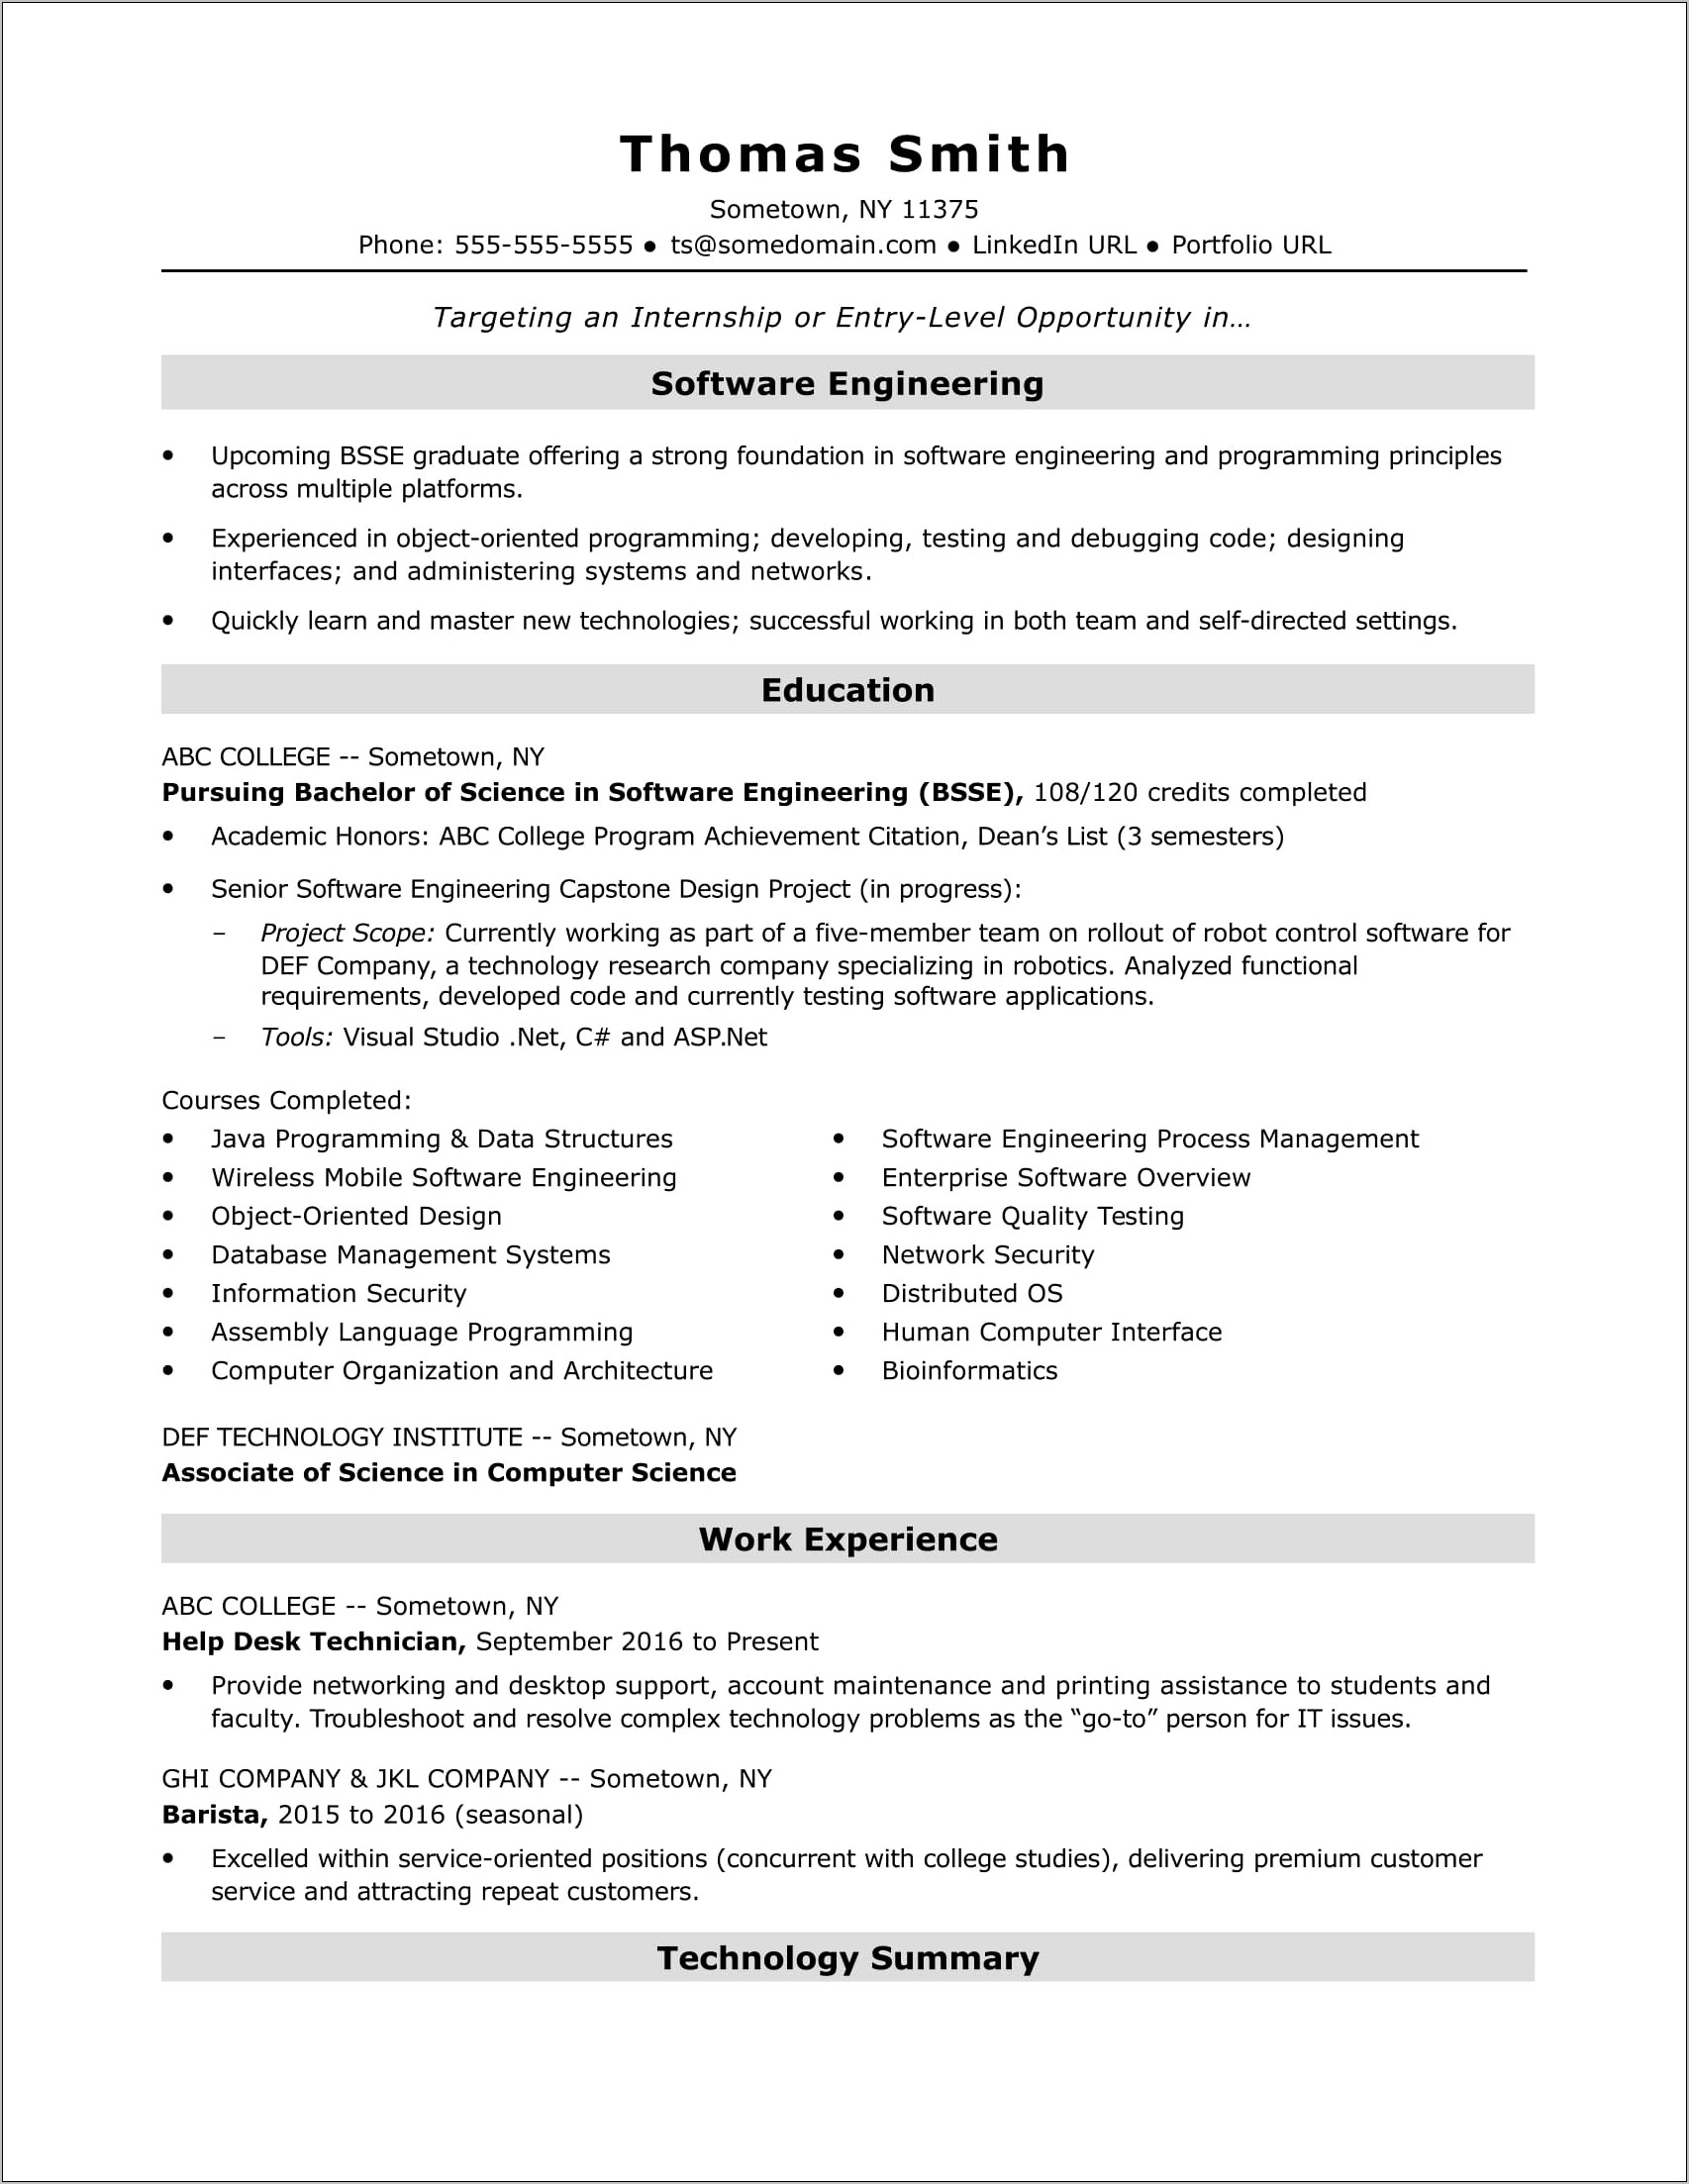 Sample Resume For Entry Level It Help Desk